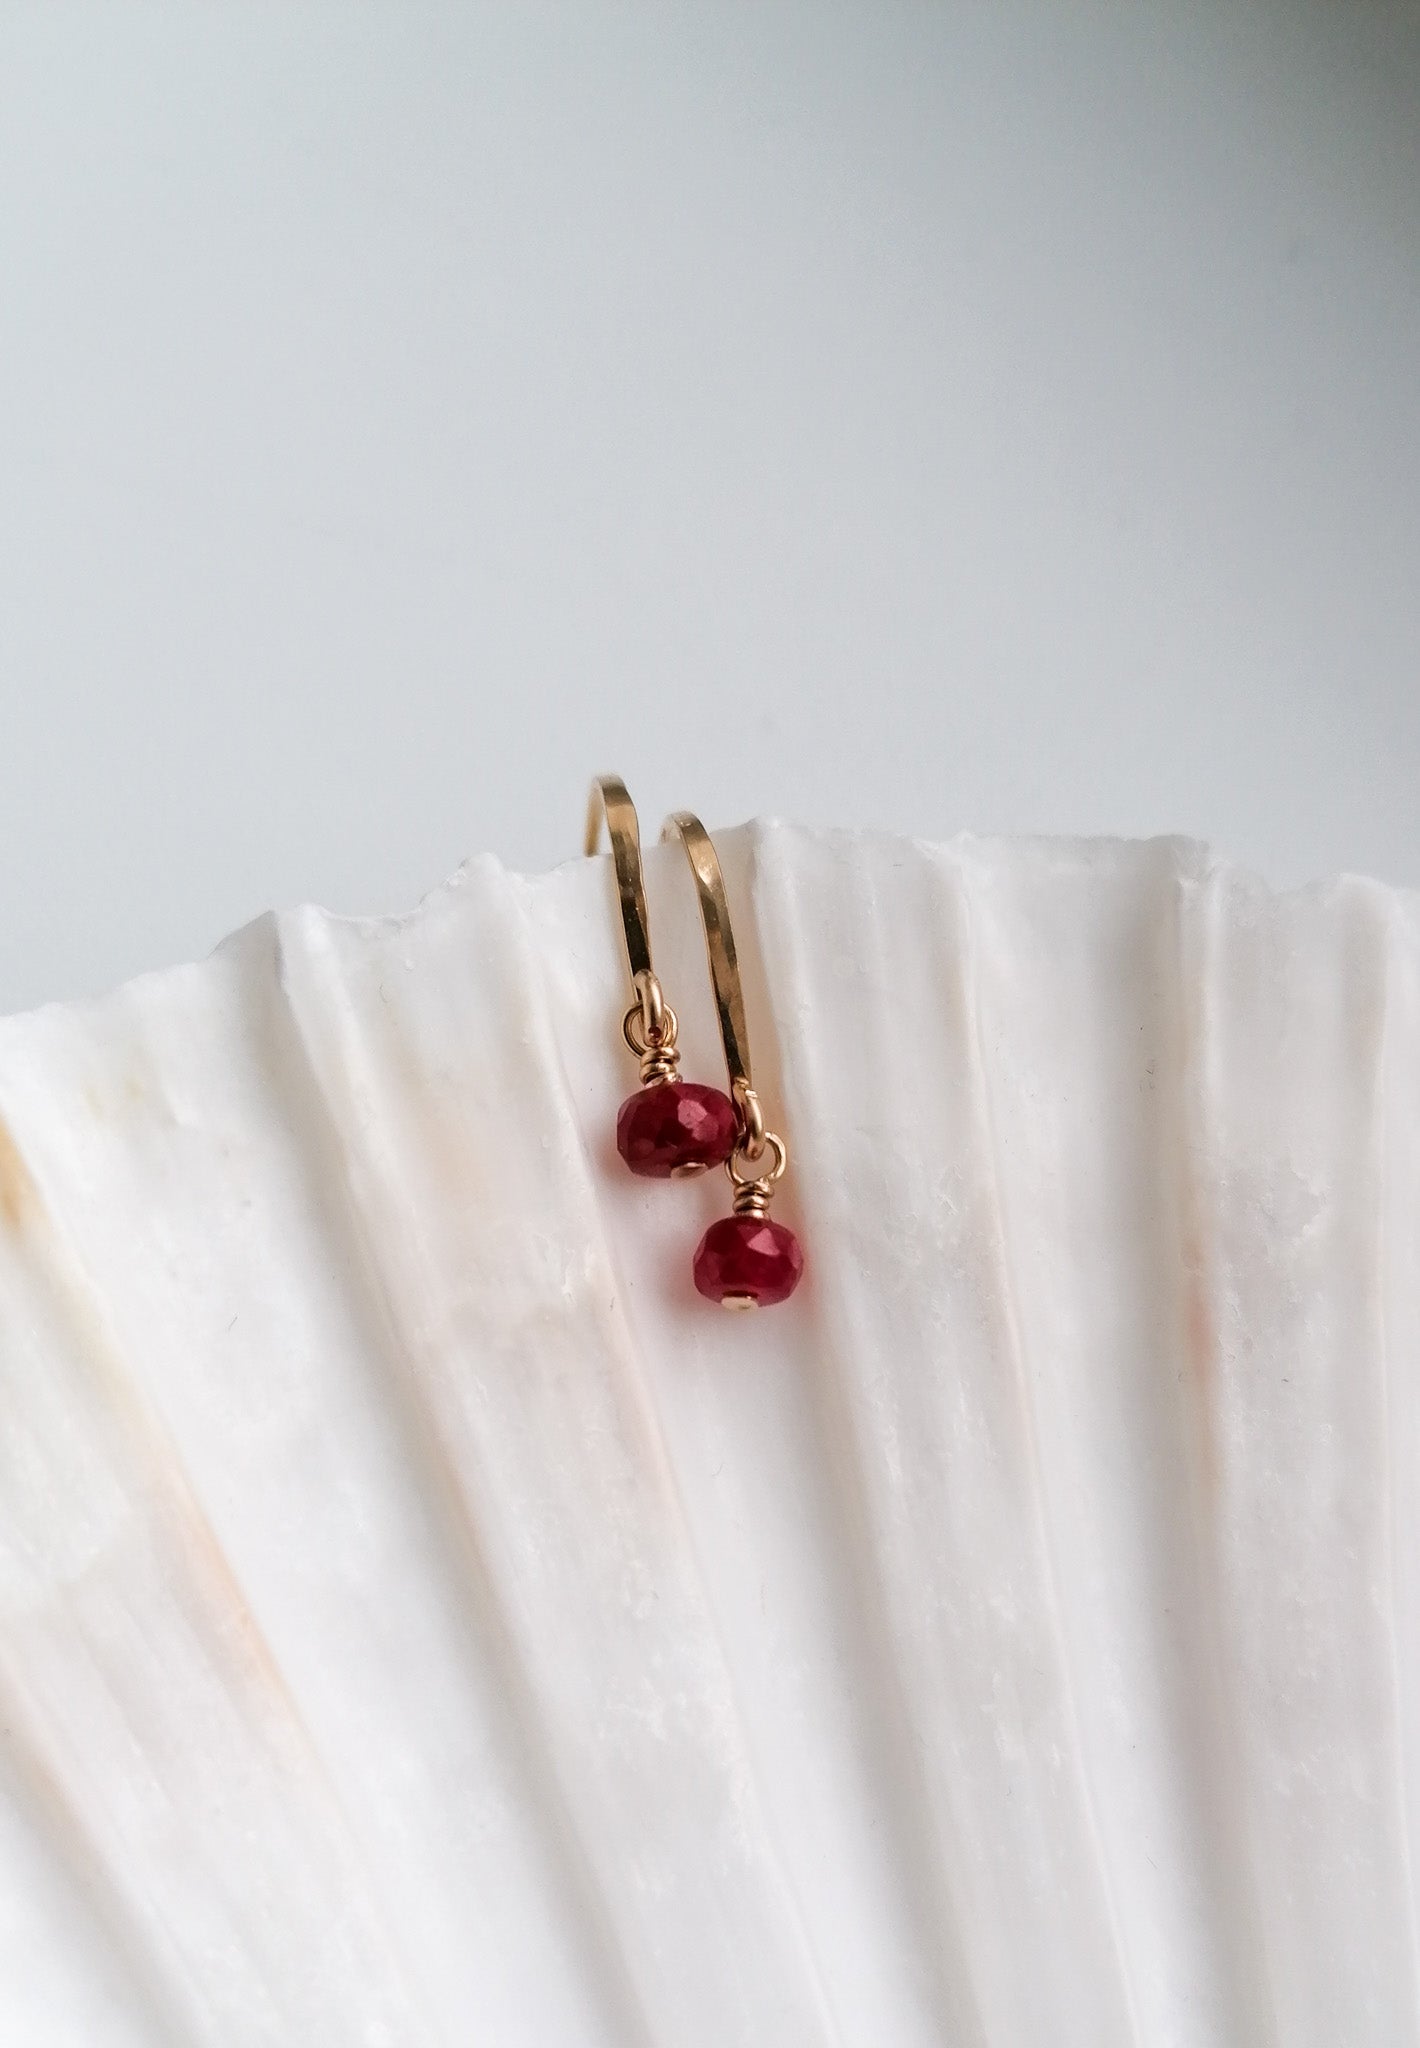 Ruby earrings - gold filled